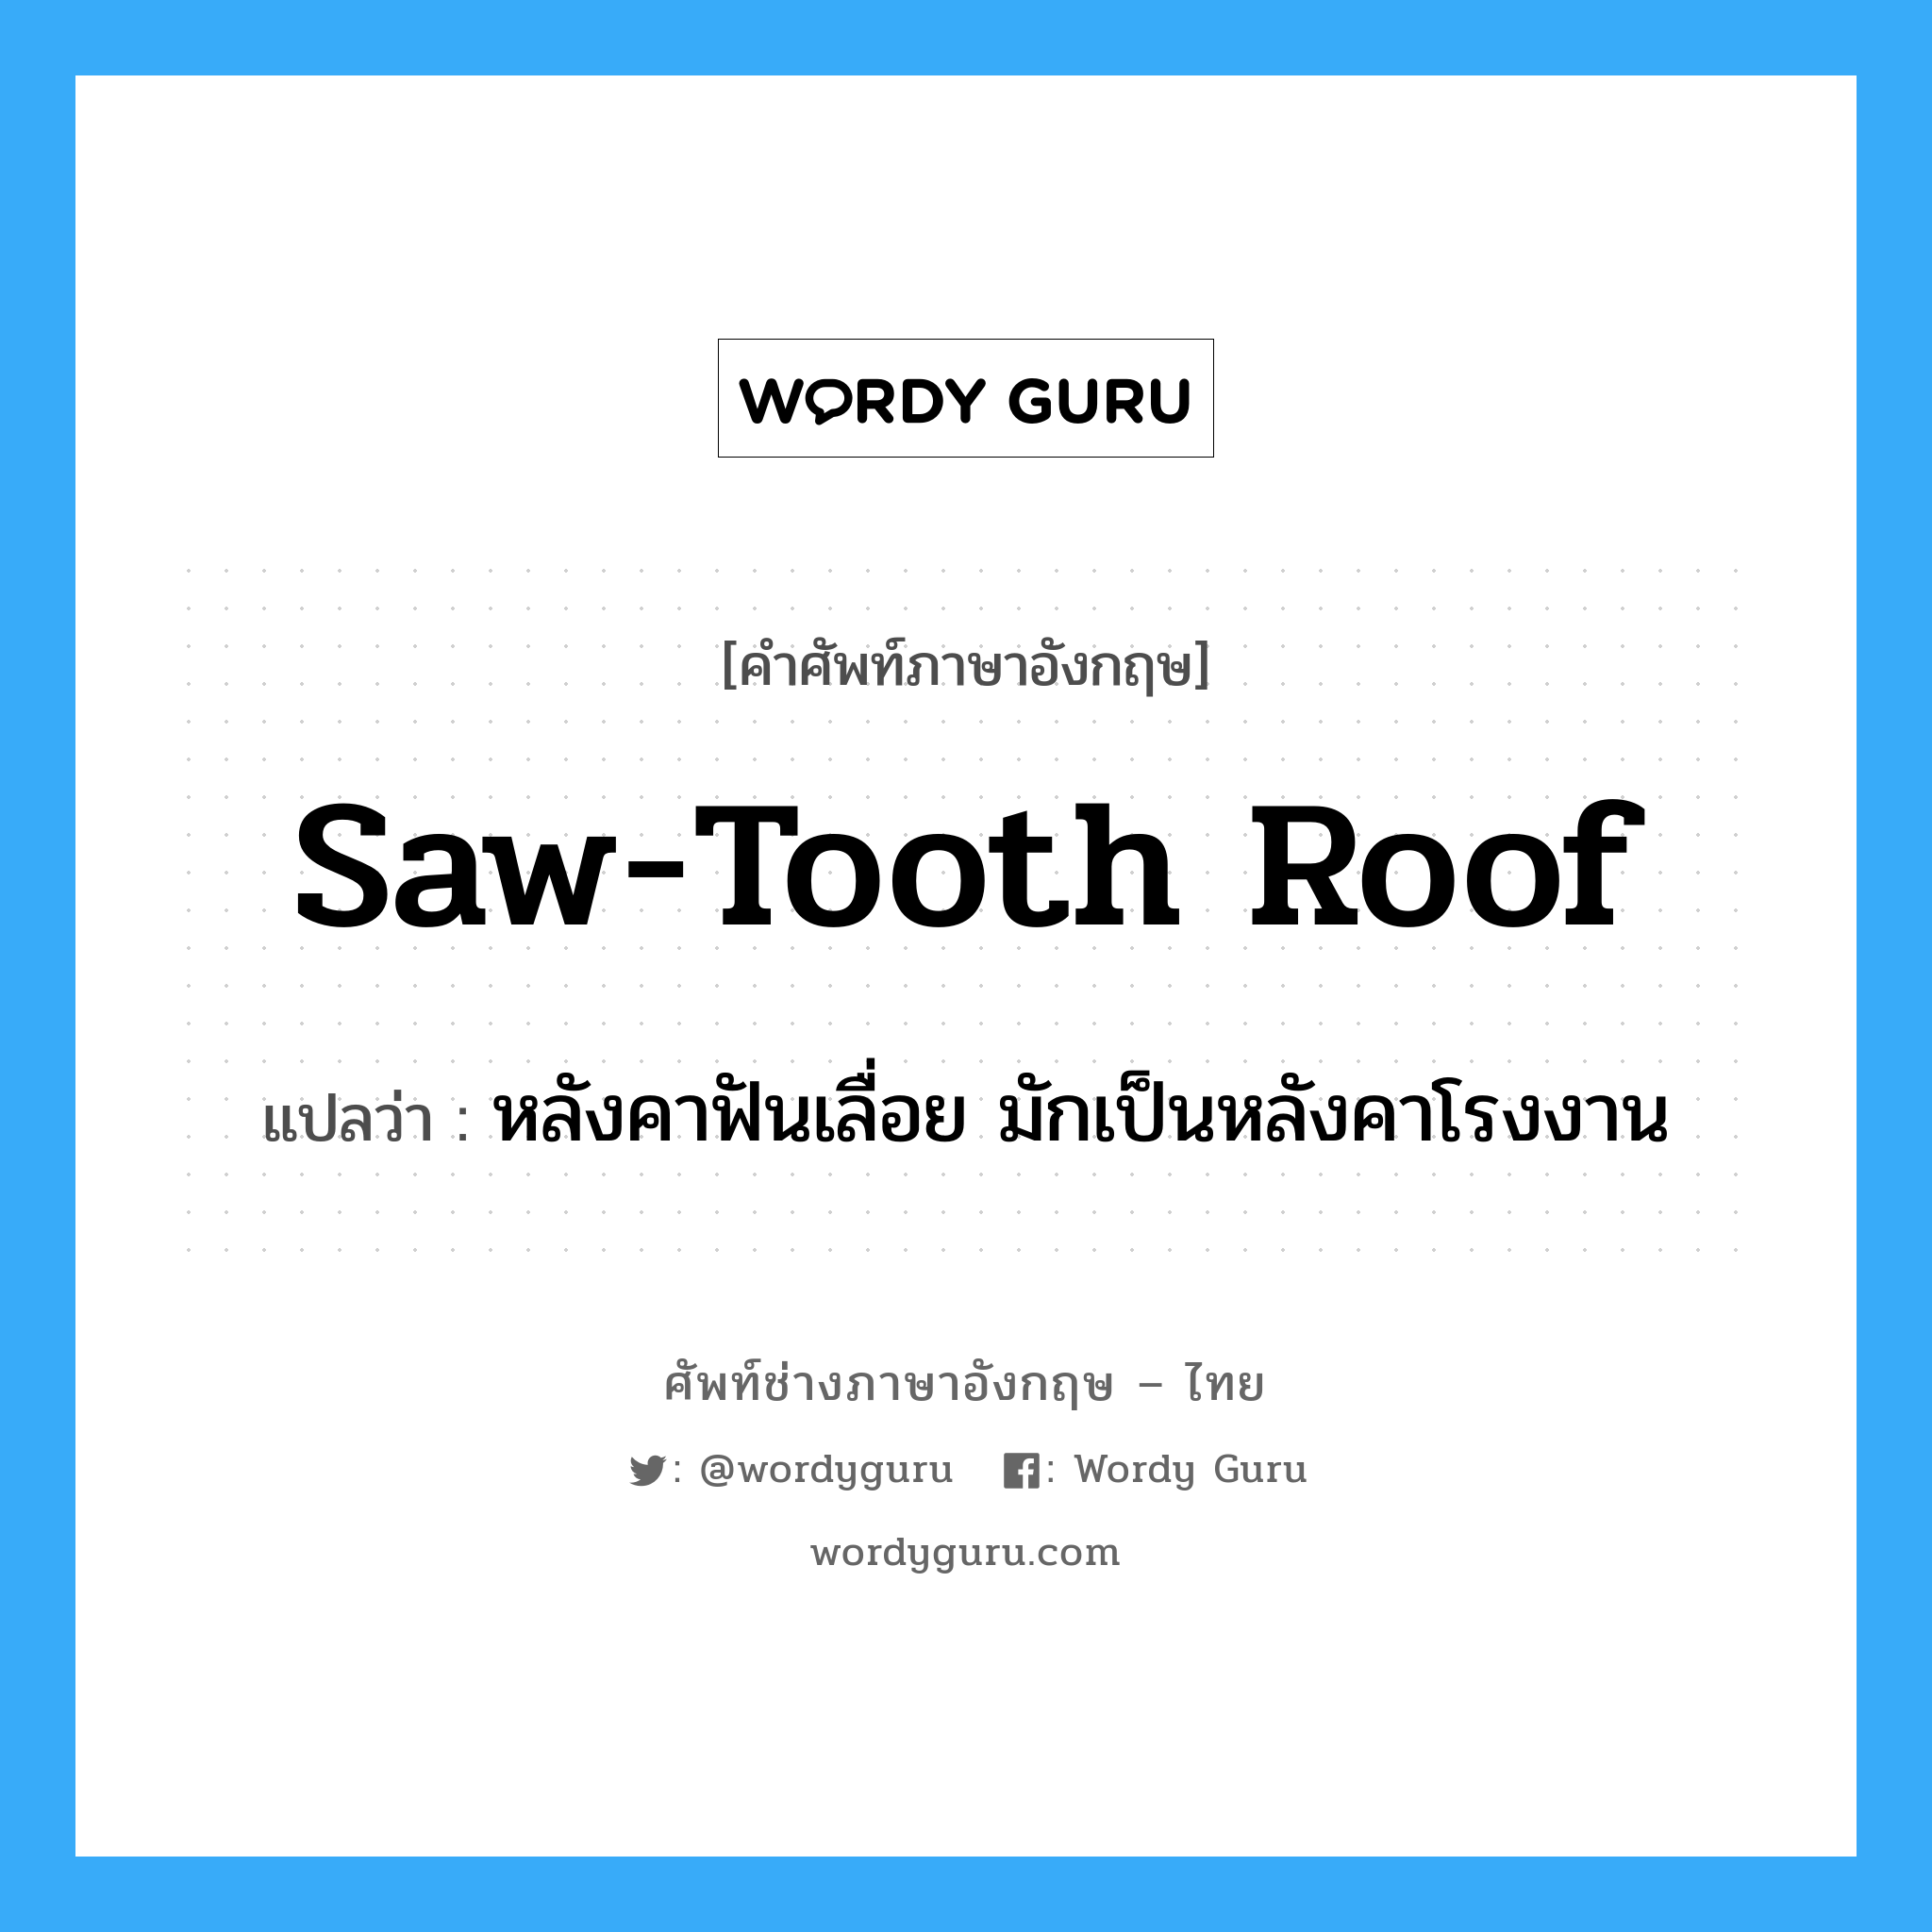 หลังคาฟันเลื่อย มักเป็นหลังคาโรงงาน ภาษาอังกฤษ?, คำศัพท์ช่างภาษาอังกฤษ - ไทย หลังคาฟันเลื่อย มักเป็นหลังคาโรงงาน คำศัพท์ภาษาอังกฤษ หลังคาฟันเลื่อย มักเป็นหลังคาโรงงาน แปลว่า saw-tooth roof